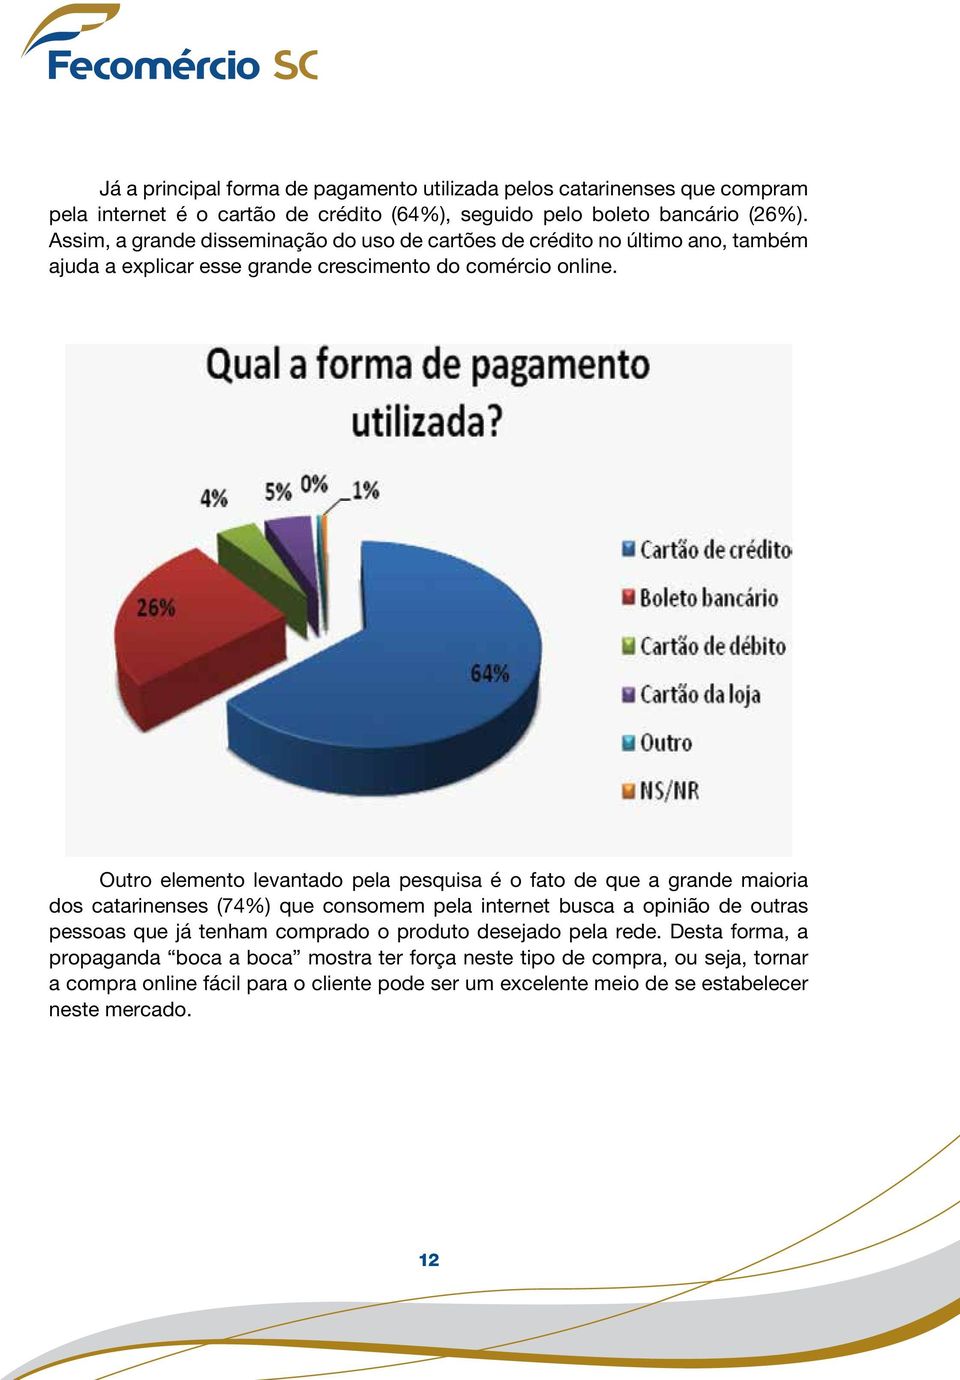 Outro elemento levantado pela pesquisa é o fato de que a grande maioria dos catarinenses (74%) que consomem pela internet busca a opinião de outras pessoas que já tenham